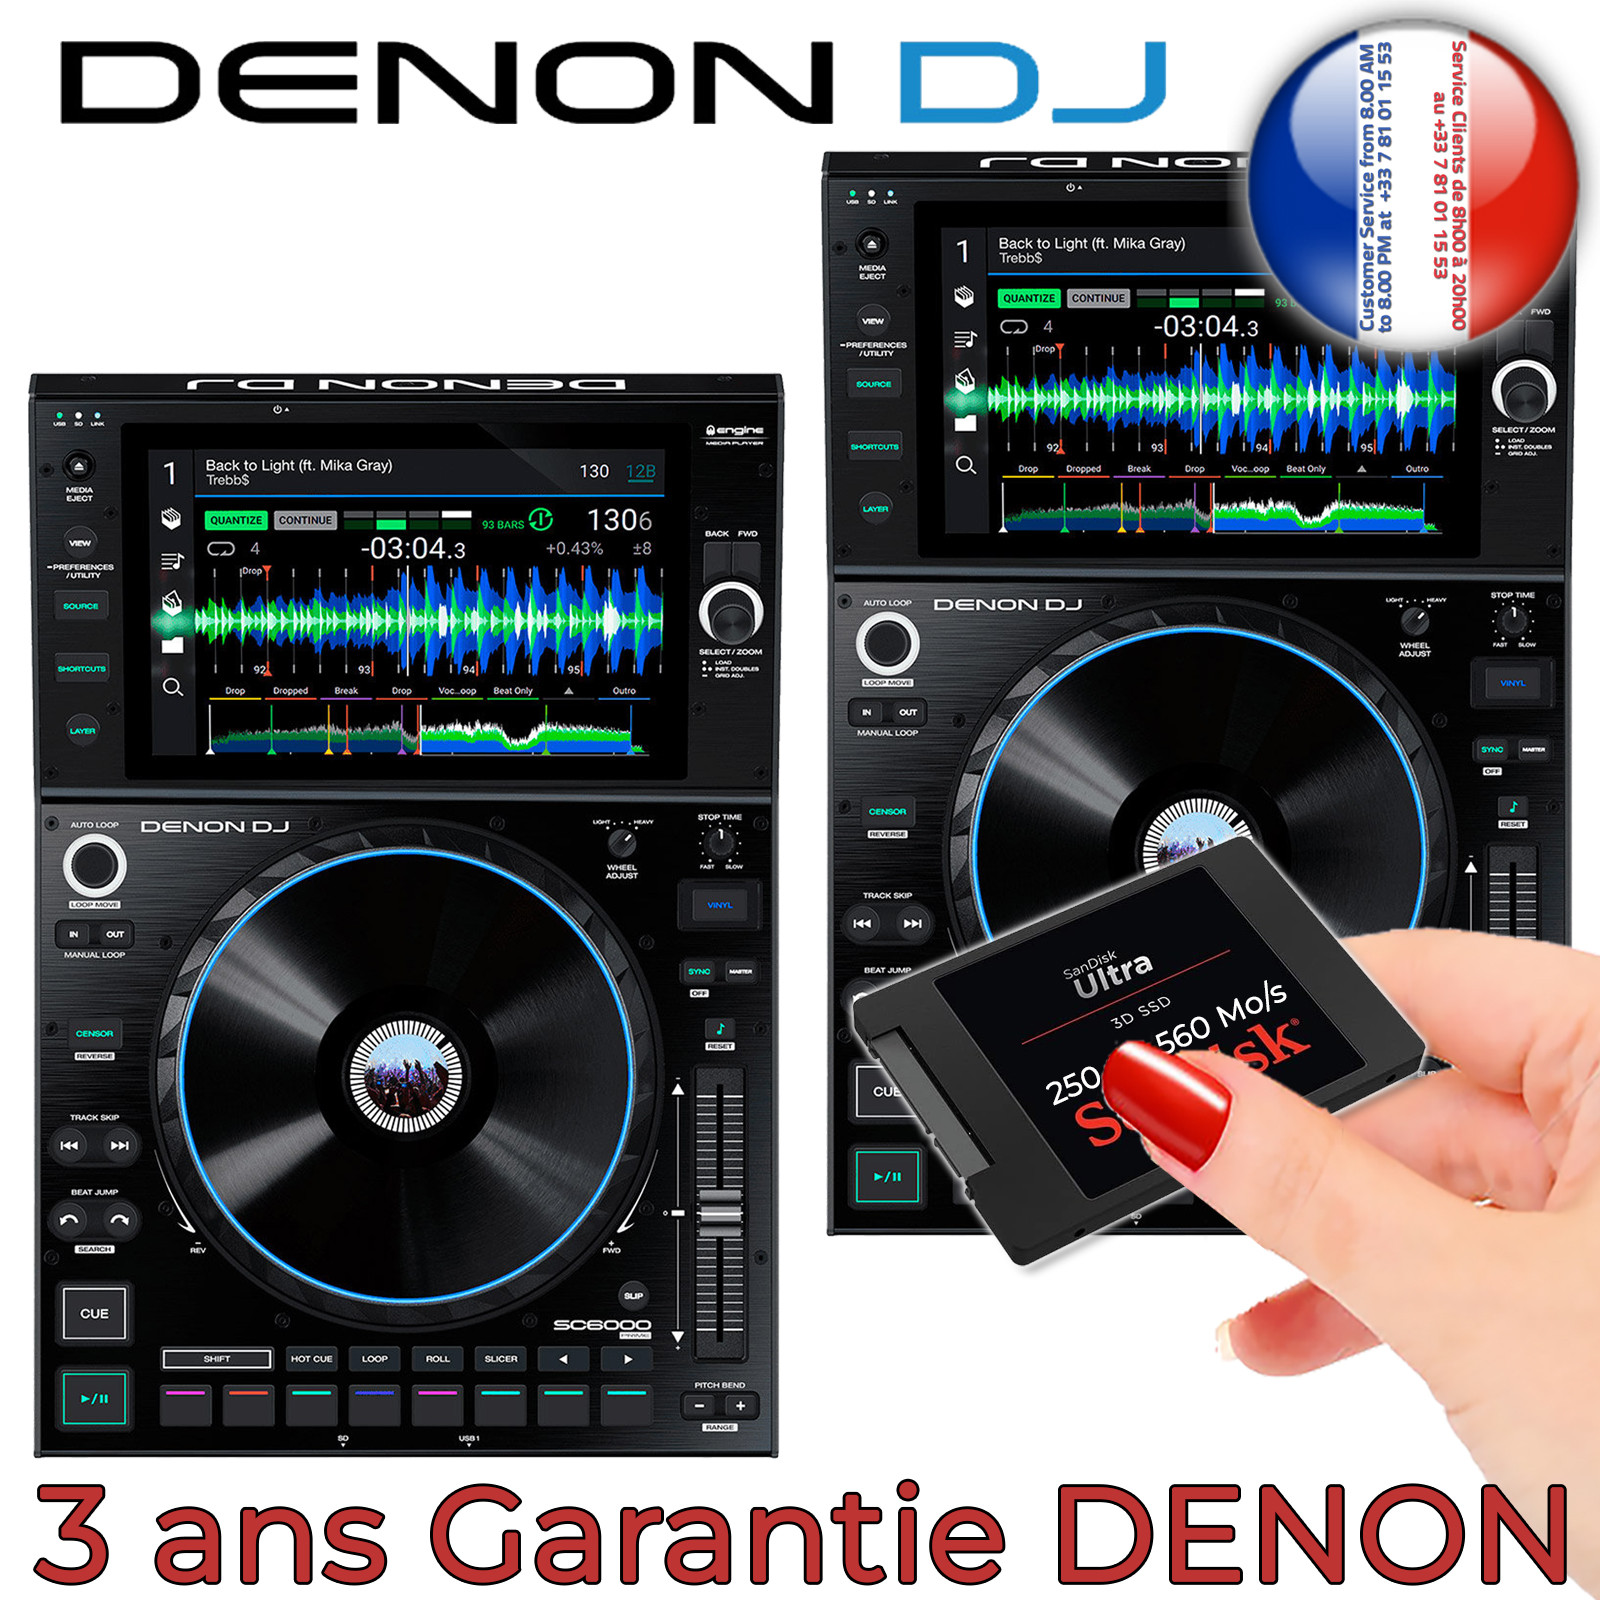 Vente Platine DJ Numérique DENON DJ SC6000M Prime - Sono 85 (magasin) /  Sono NANTES (e-commerce)